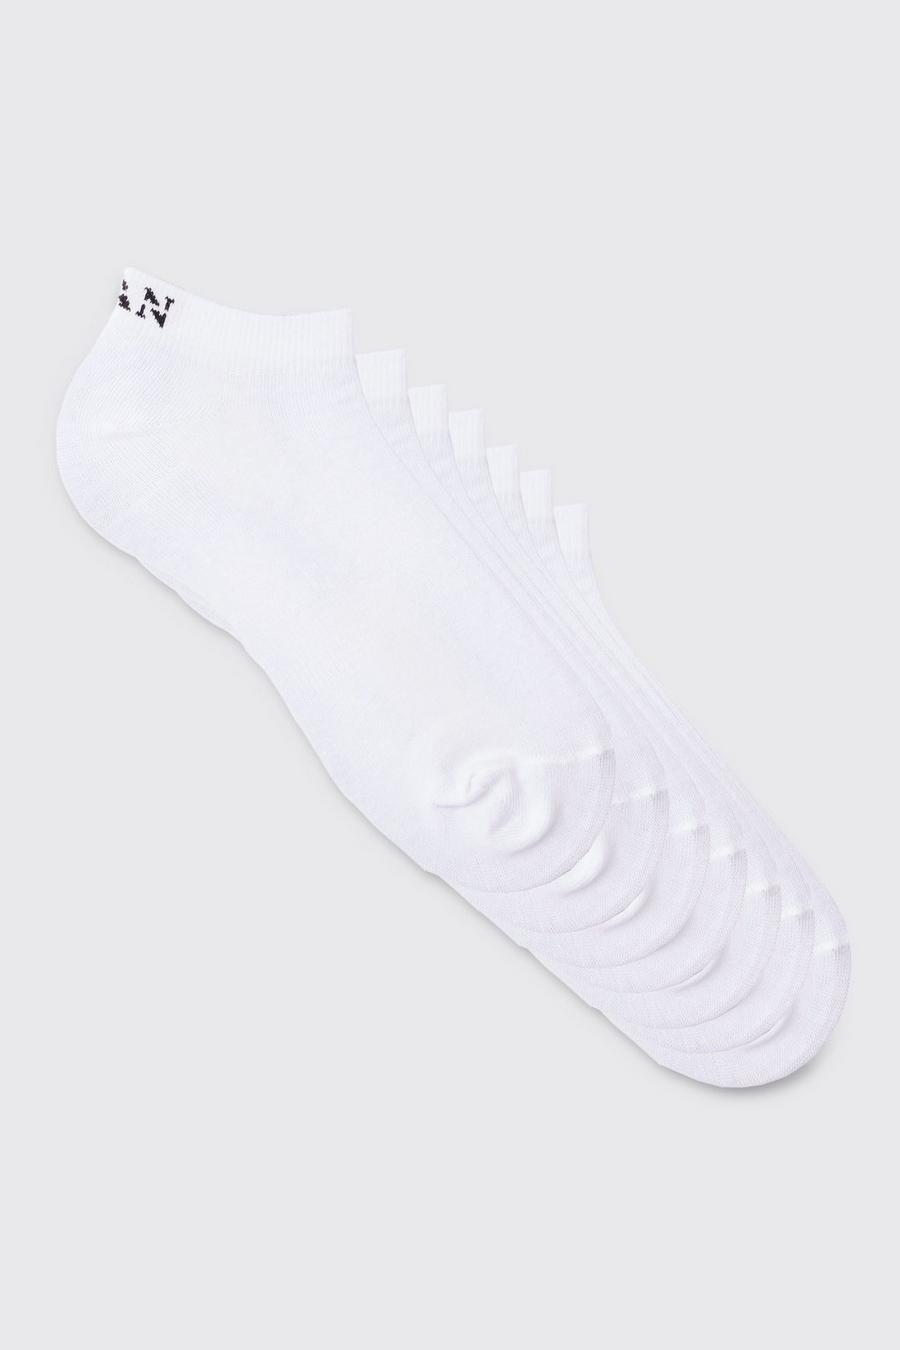 Pack de 7 pares de calcetines deportivos MAN Dash, Blanco bianco